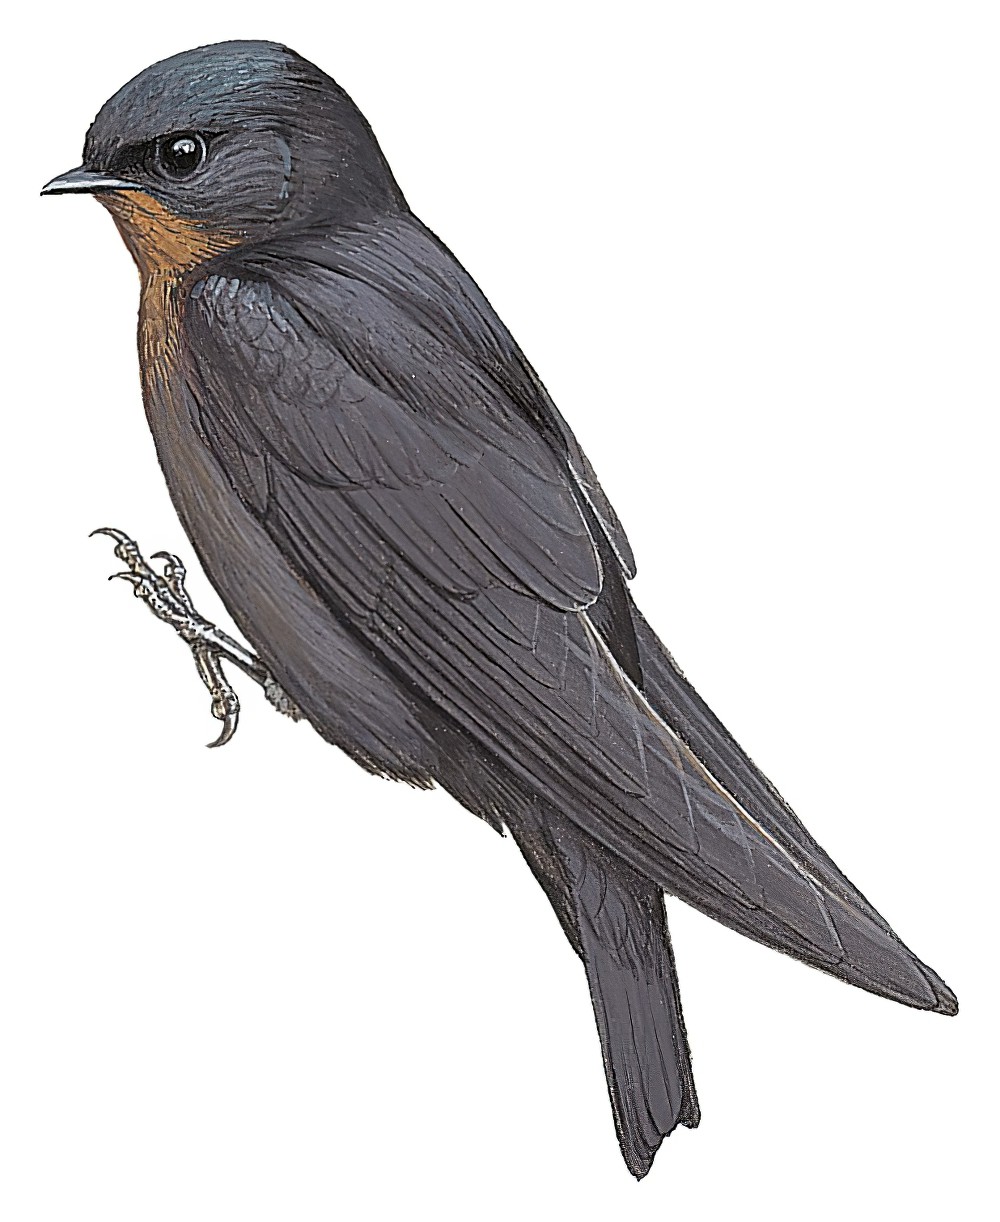 林燕 / Forest Swallow / Petrochelidon fuliginosa